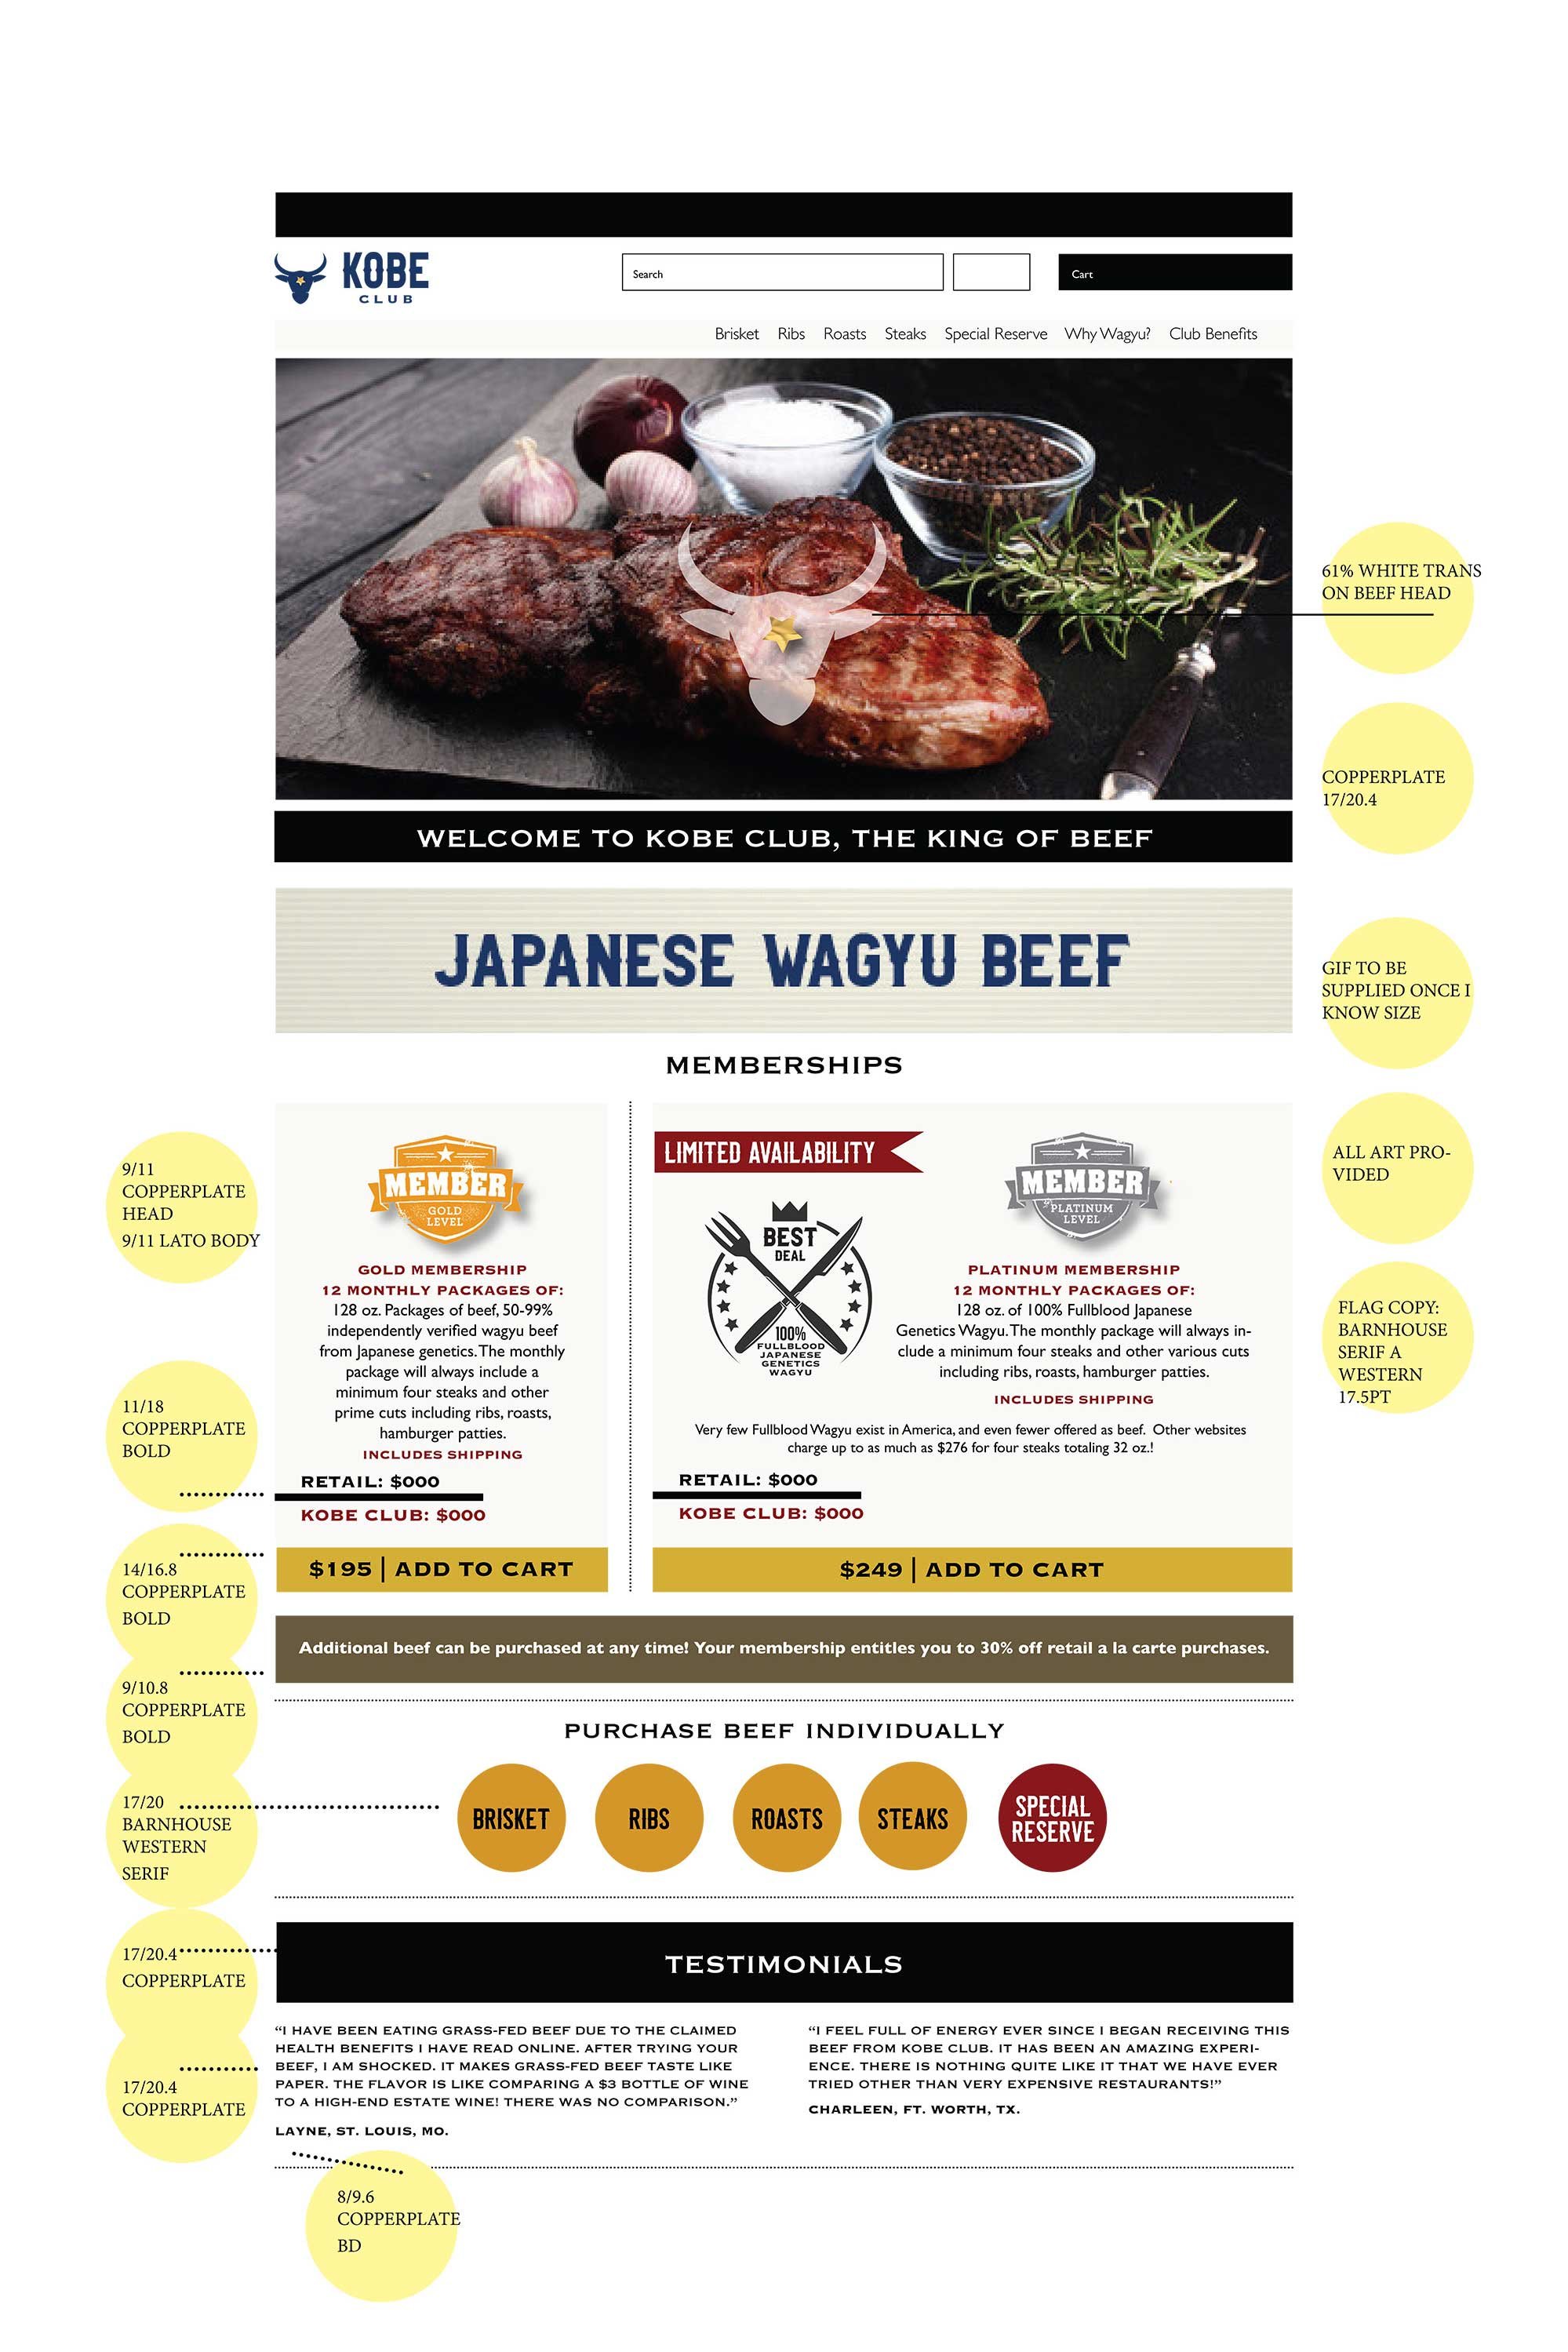 kobe-beef-website-layout-5.jpg